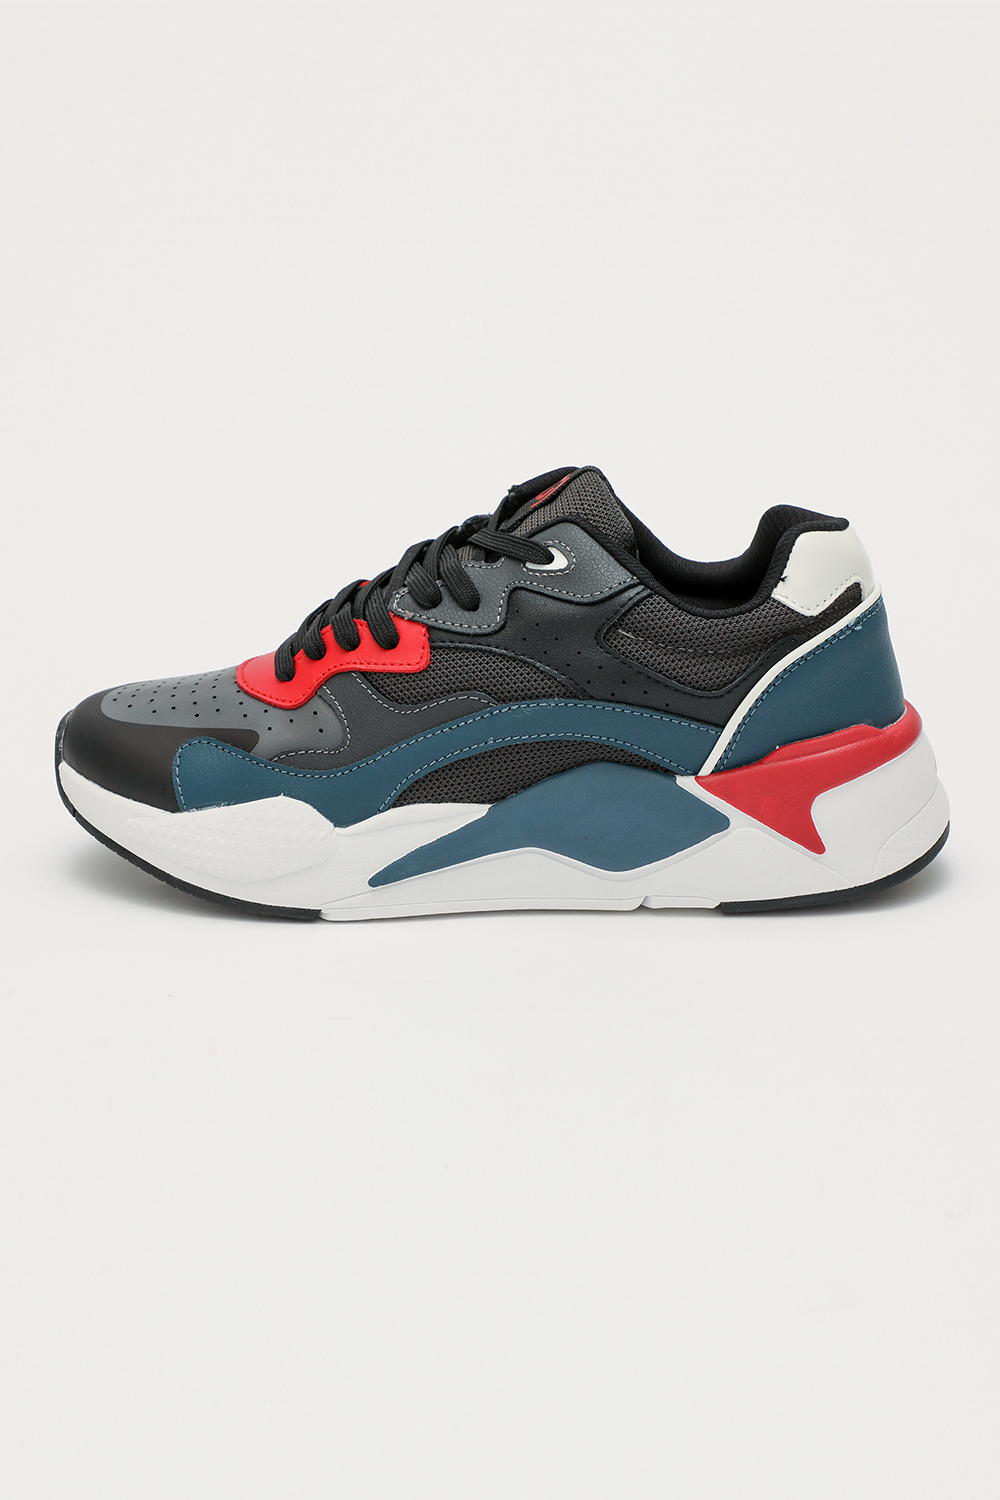 Ανδρικά/Παπούτσια/Sneakers GAUDI - Ανδρικά sneakers GAUDI μαύρα κόκκινα μπλε